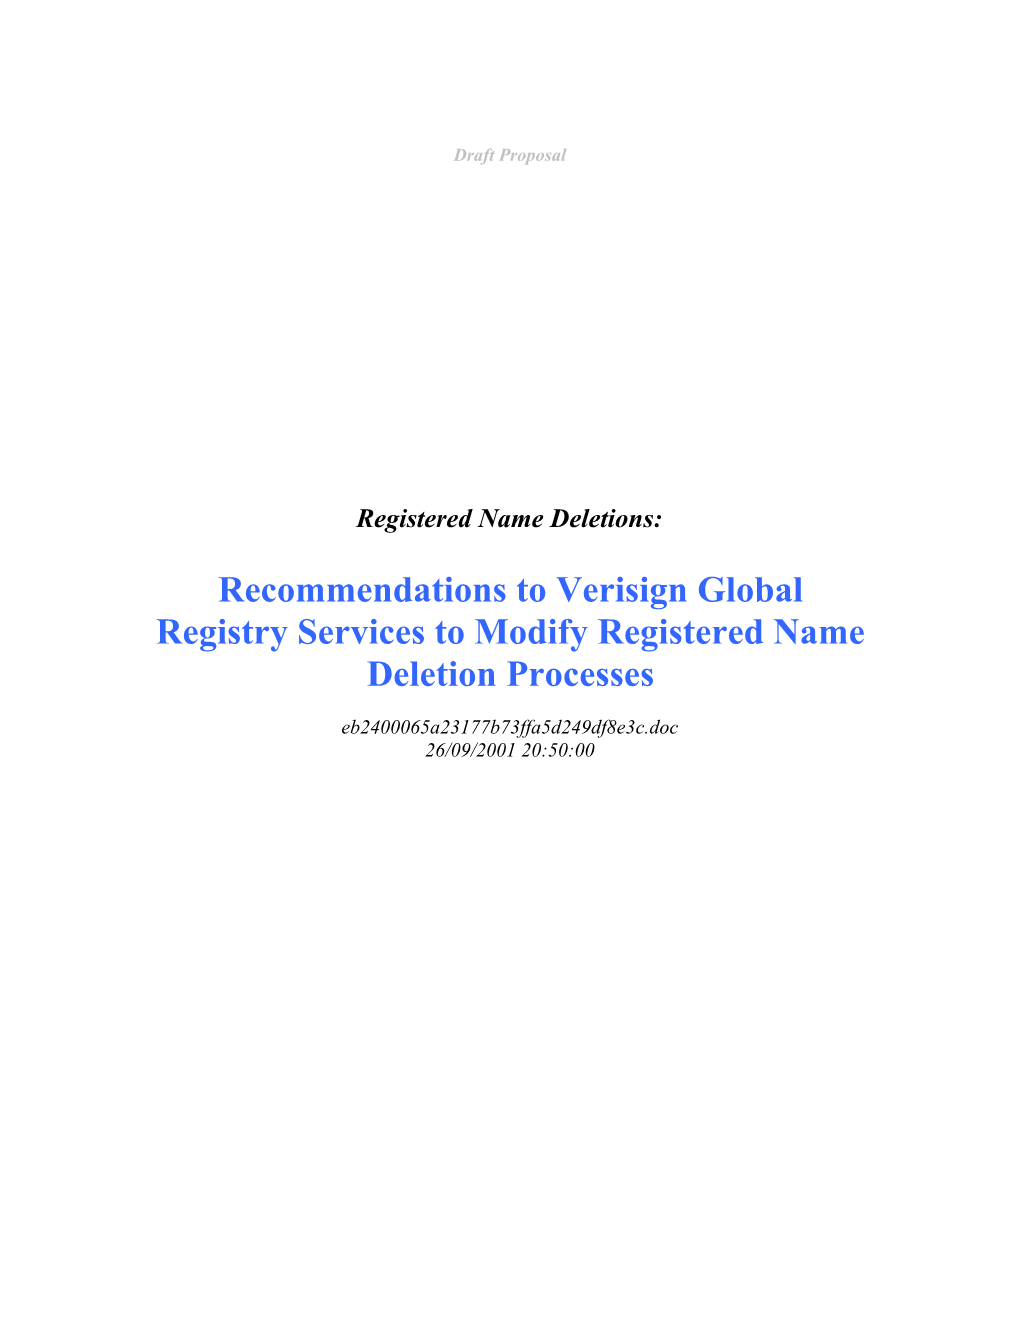 ICANN DNSO Registrar Constituency Proposal Draft